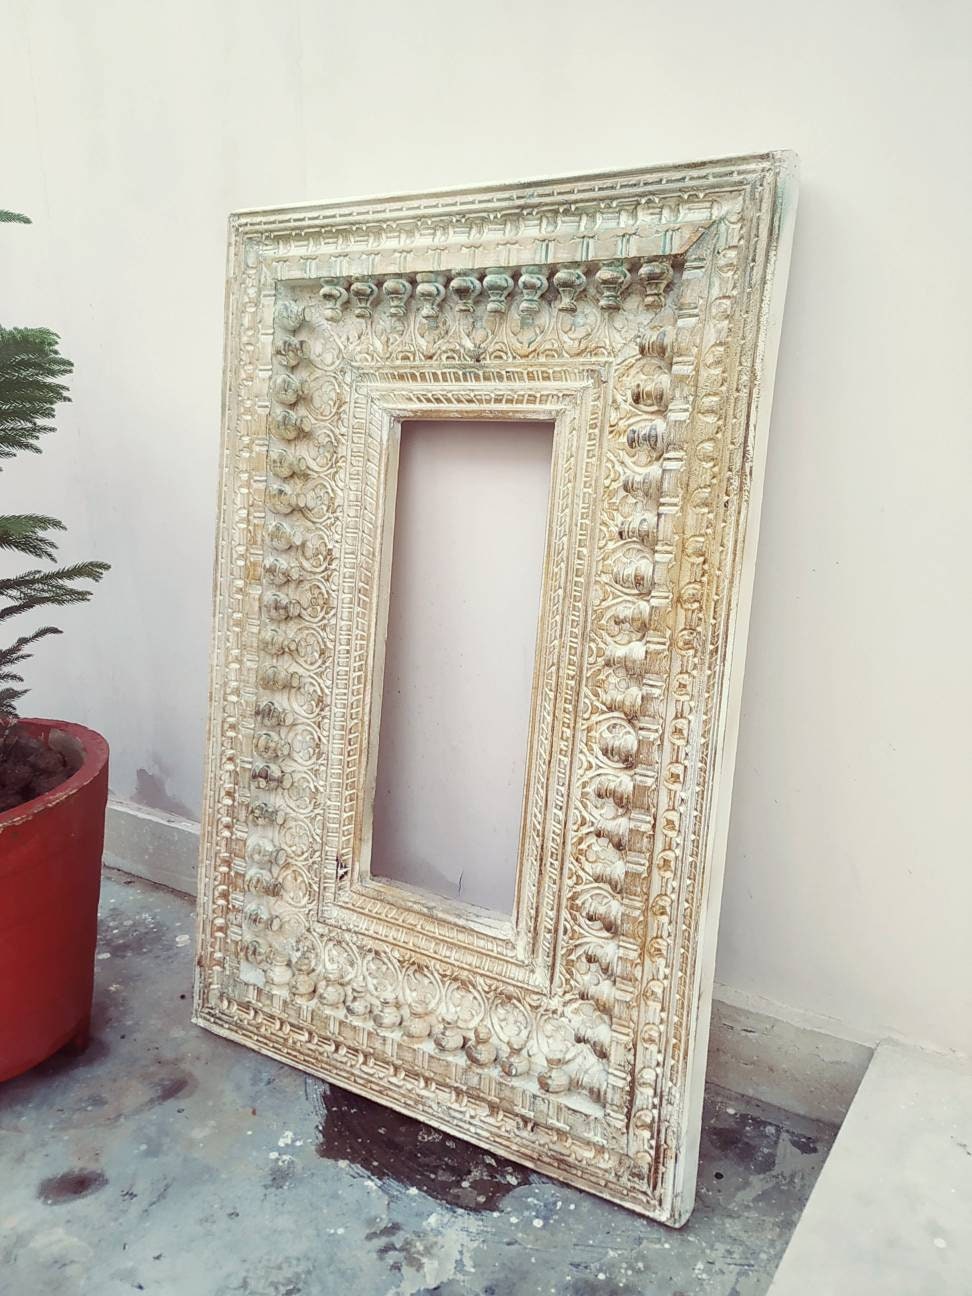 Specchio da parete bianco 156x156x6 cm Made in Italy Specchio grande da  parete | Specchio camera da letto Shabby